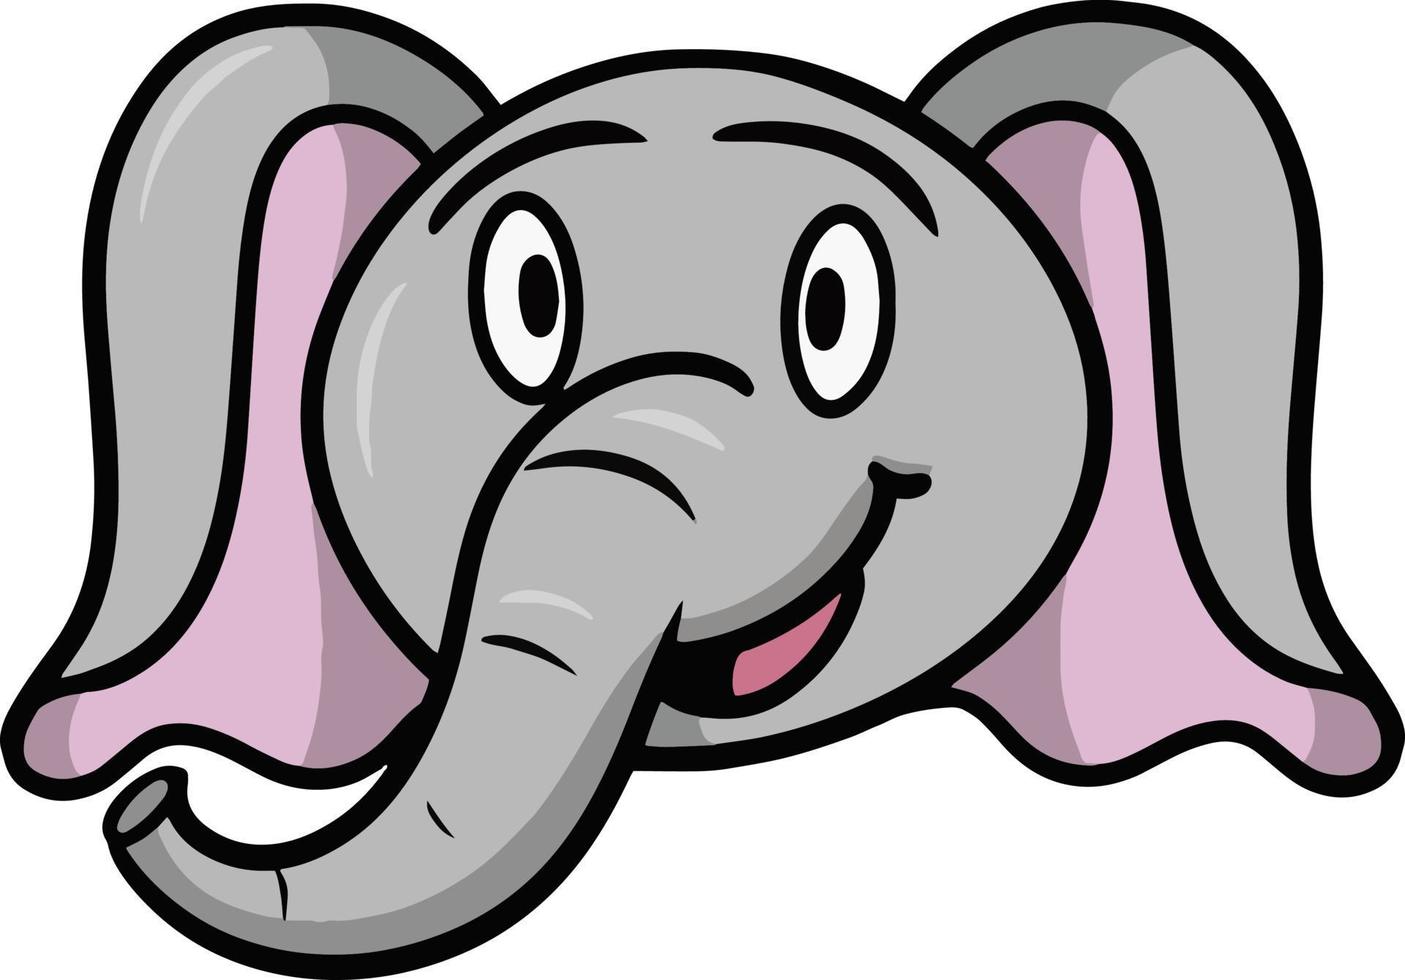 engraçado e fofo elefante sorrindo, emoções de elefante de desenho animado, ilustração vetorial em fundo branco vetor